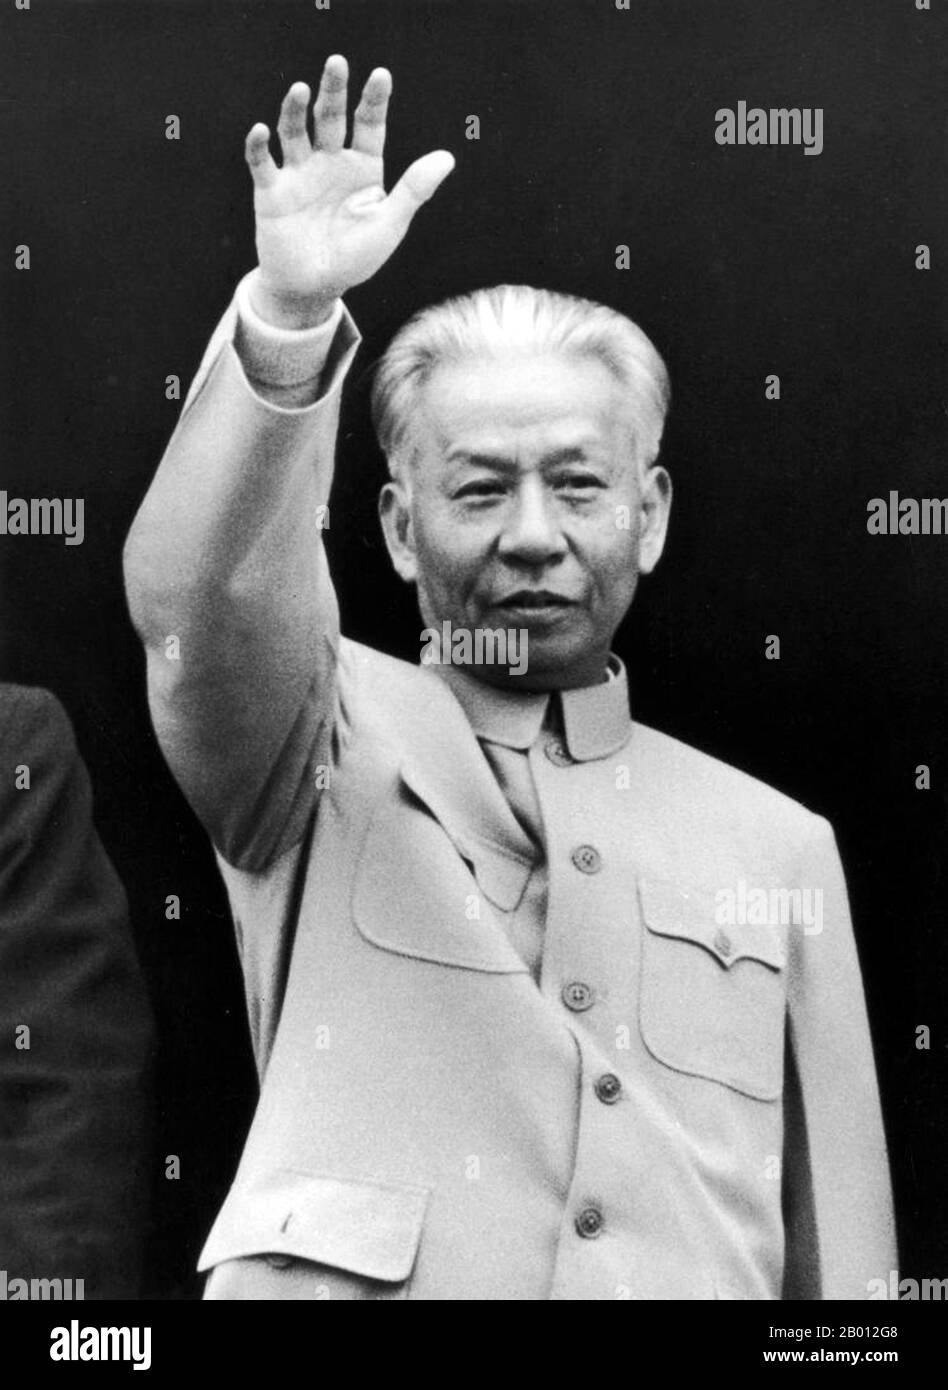 Cina: Liu Shaoqi (Liu Shao-ch'i, 1898-1969) Presidente della Repubblica popolare cinese (r. 1959-1968). Liu Shaoqi (Liu Shao-ch'i, 24 novembre 1898 – 1969 novembre 12) è stato un . Dal 27 aprile 1959 al 31 ottobre 1968 è stato presidente della Repubblica popolare cinese, capo di Stato cinese, durante il quale ha attuato politiche di ricostruzione economica in Cina. Cadde di favore negli anni Sessanta successivi durante la Rivoluzione Culturale a causa dei suoi punti di vista percepiti di 'destra' e, viene teorizzato, perché Mao considerava Liu come una minaccia al suo potere Foto Stock